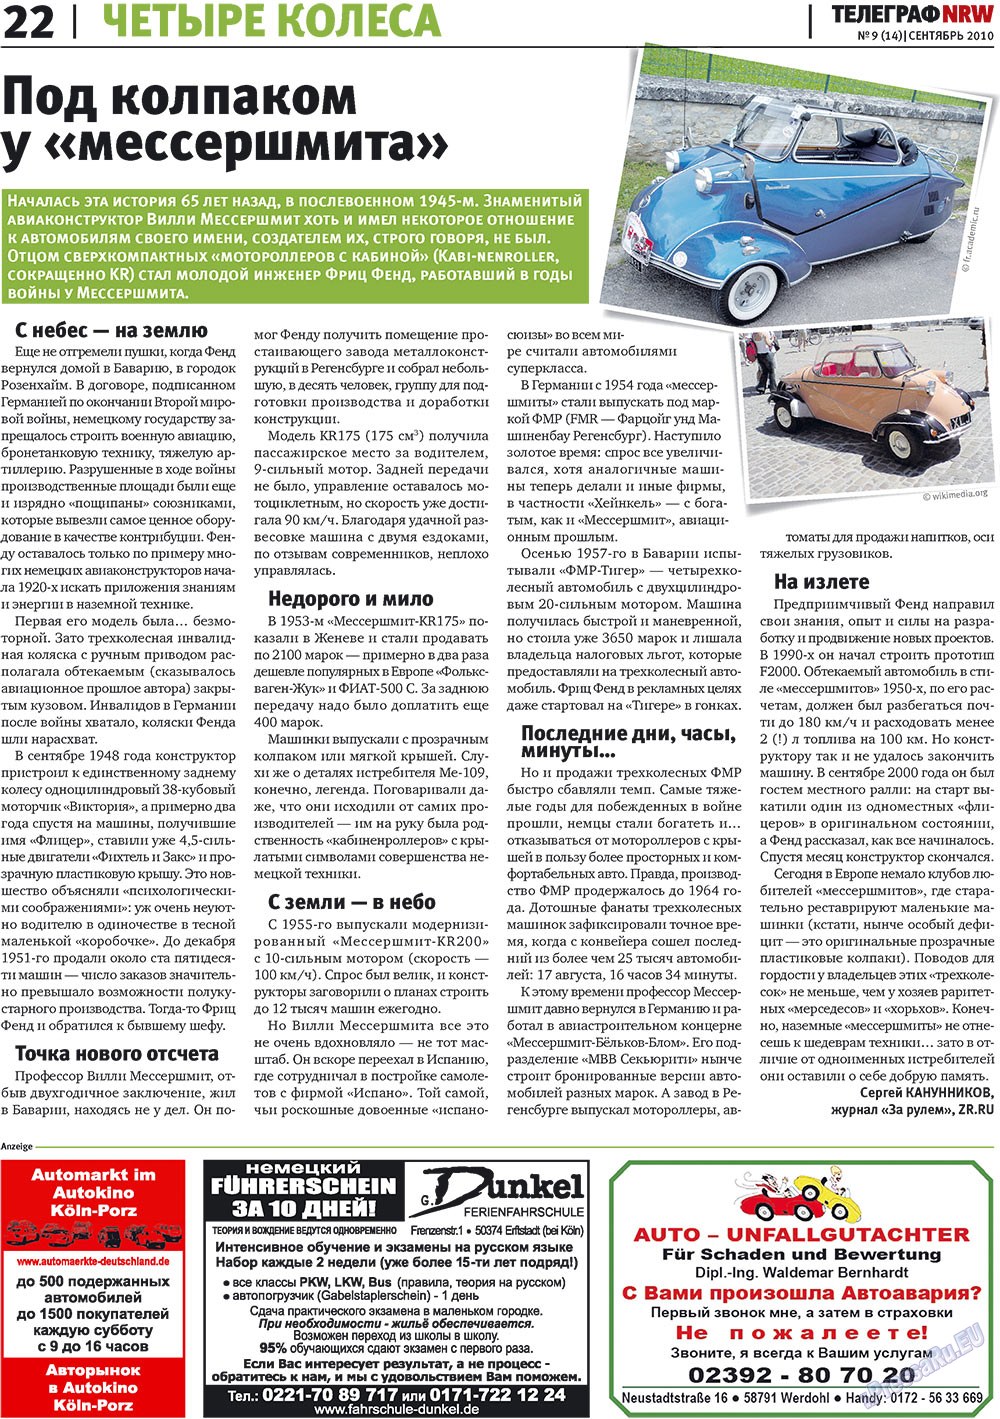 Telegraf NRW (Zeitung). 2010 Jahr, Ausgabe 9, Seite 22